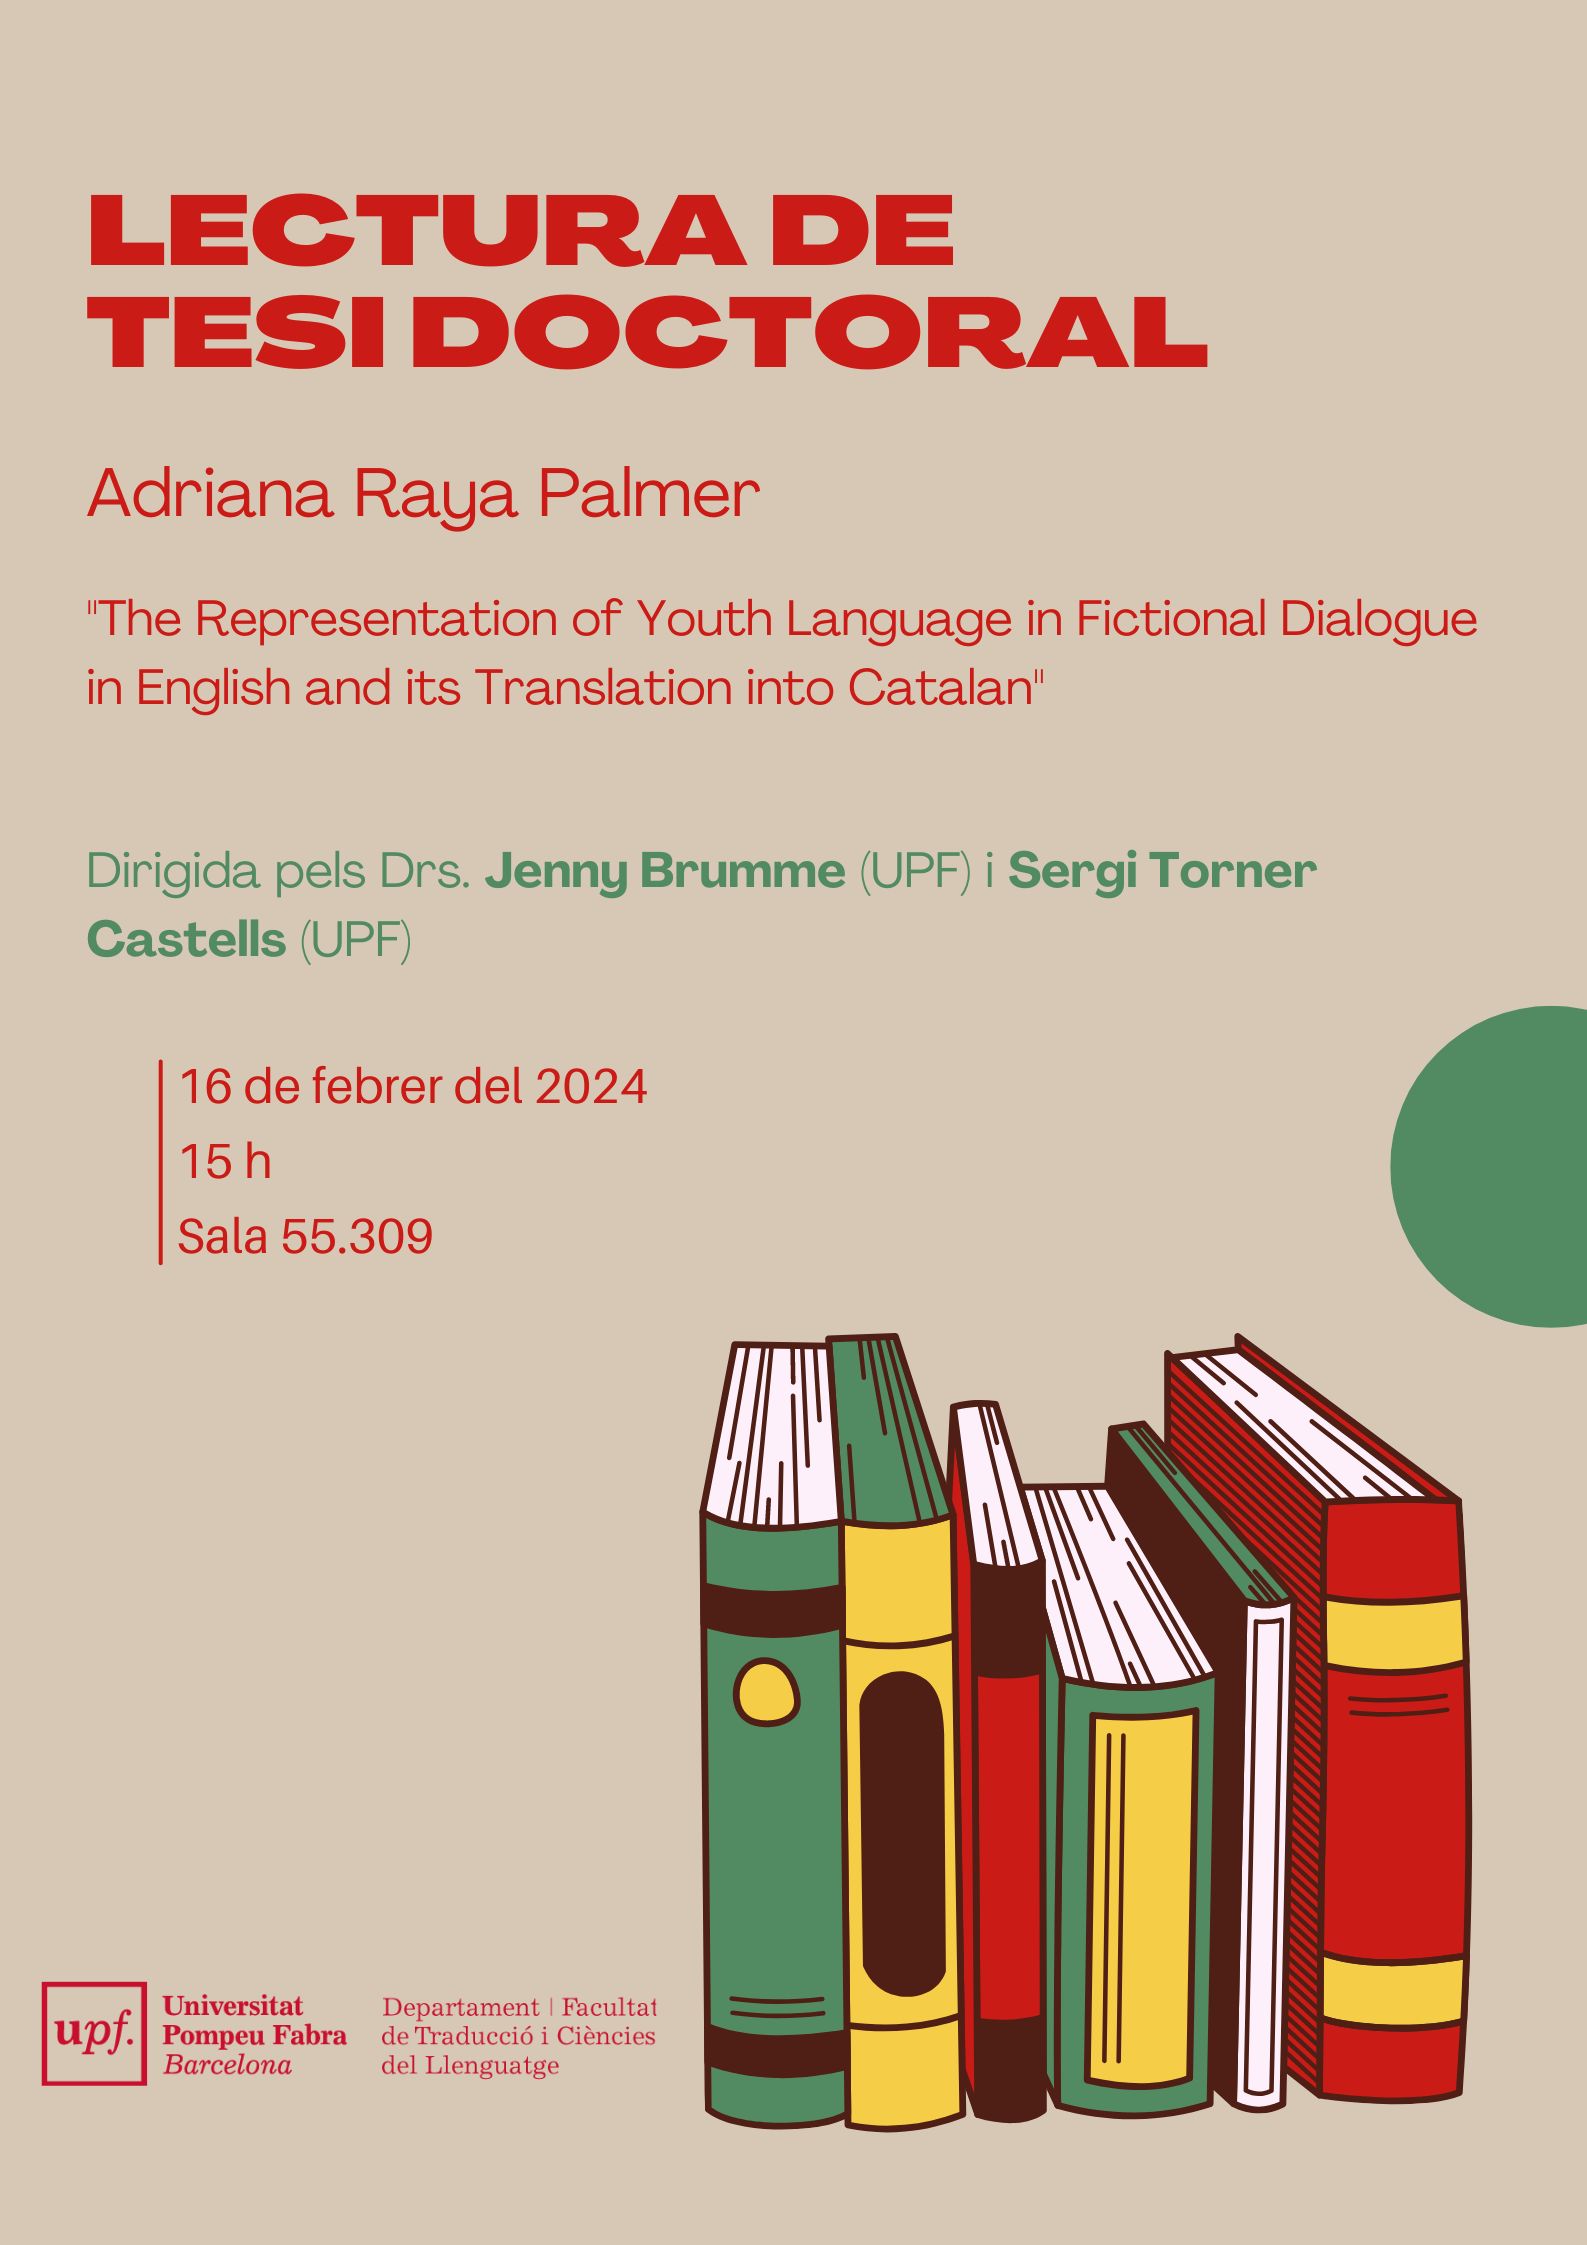 16/02/2024 Lectura de la tesi doctoral d'Adriana Raya Palmer, a les 15.00 hores